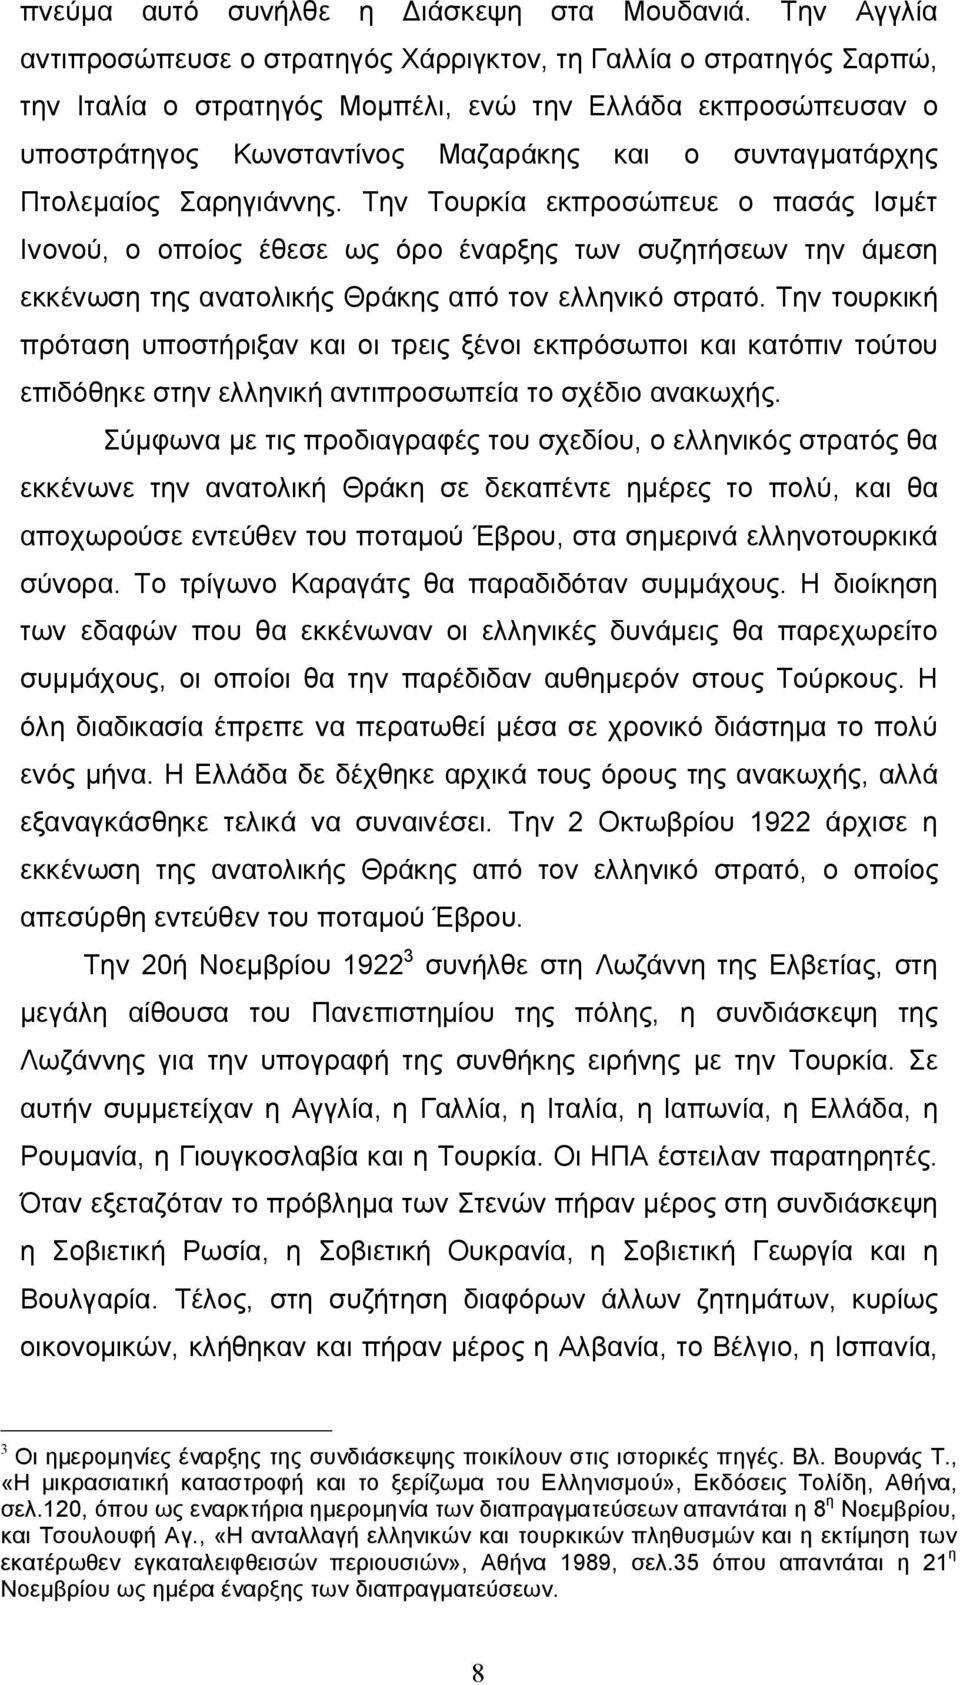 Πτολεμαίος Σαρηγιάννης. Την Τουρκία εκπροσώπευε ο πασάς Ισμέτ Ινονού, ο οποίος έθεσε ως όρο έναρξης των συζητήσεων την άμεση εκκένωση της ανατολικής Θράκης από τον ελληνικό στρατό.